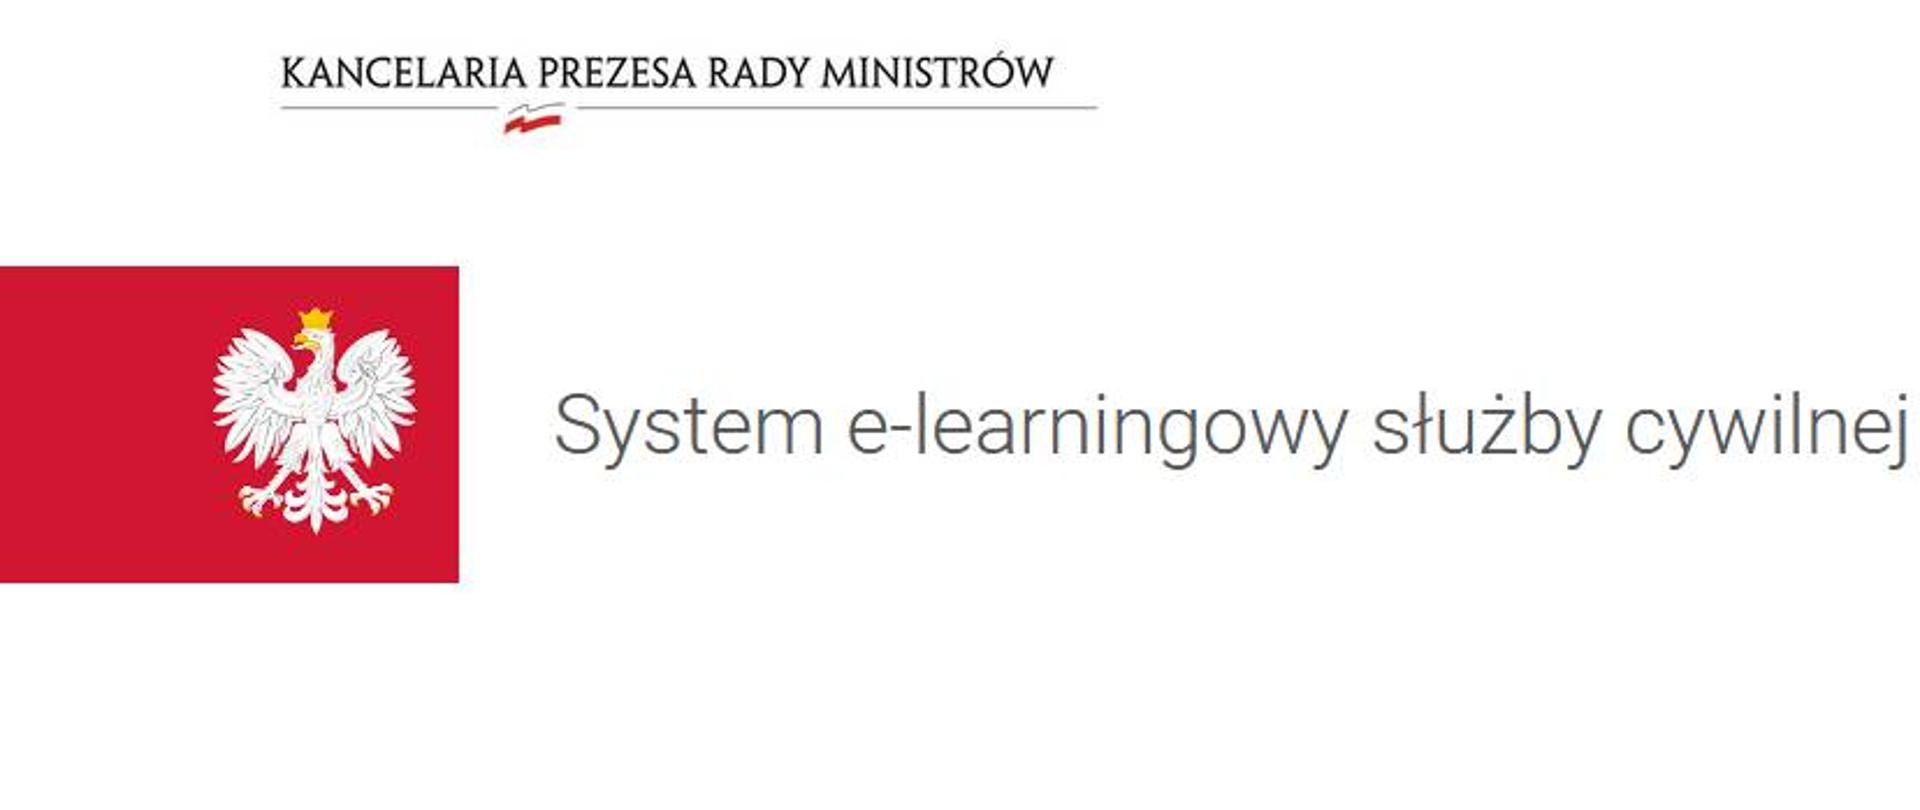 Napis System e-learningowy służby cywilnej. Po lewej godło polski. Nad napisem logo Kancelaria Prezesa Rady Ministrów